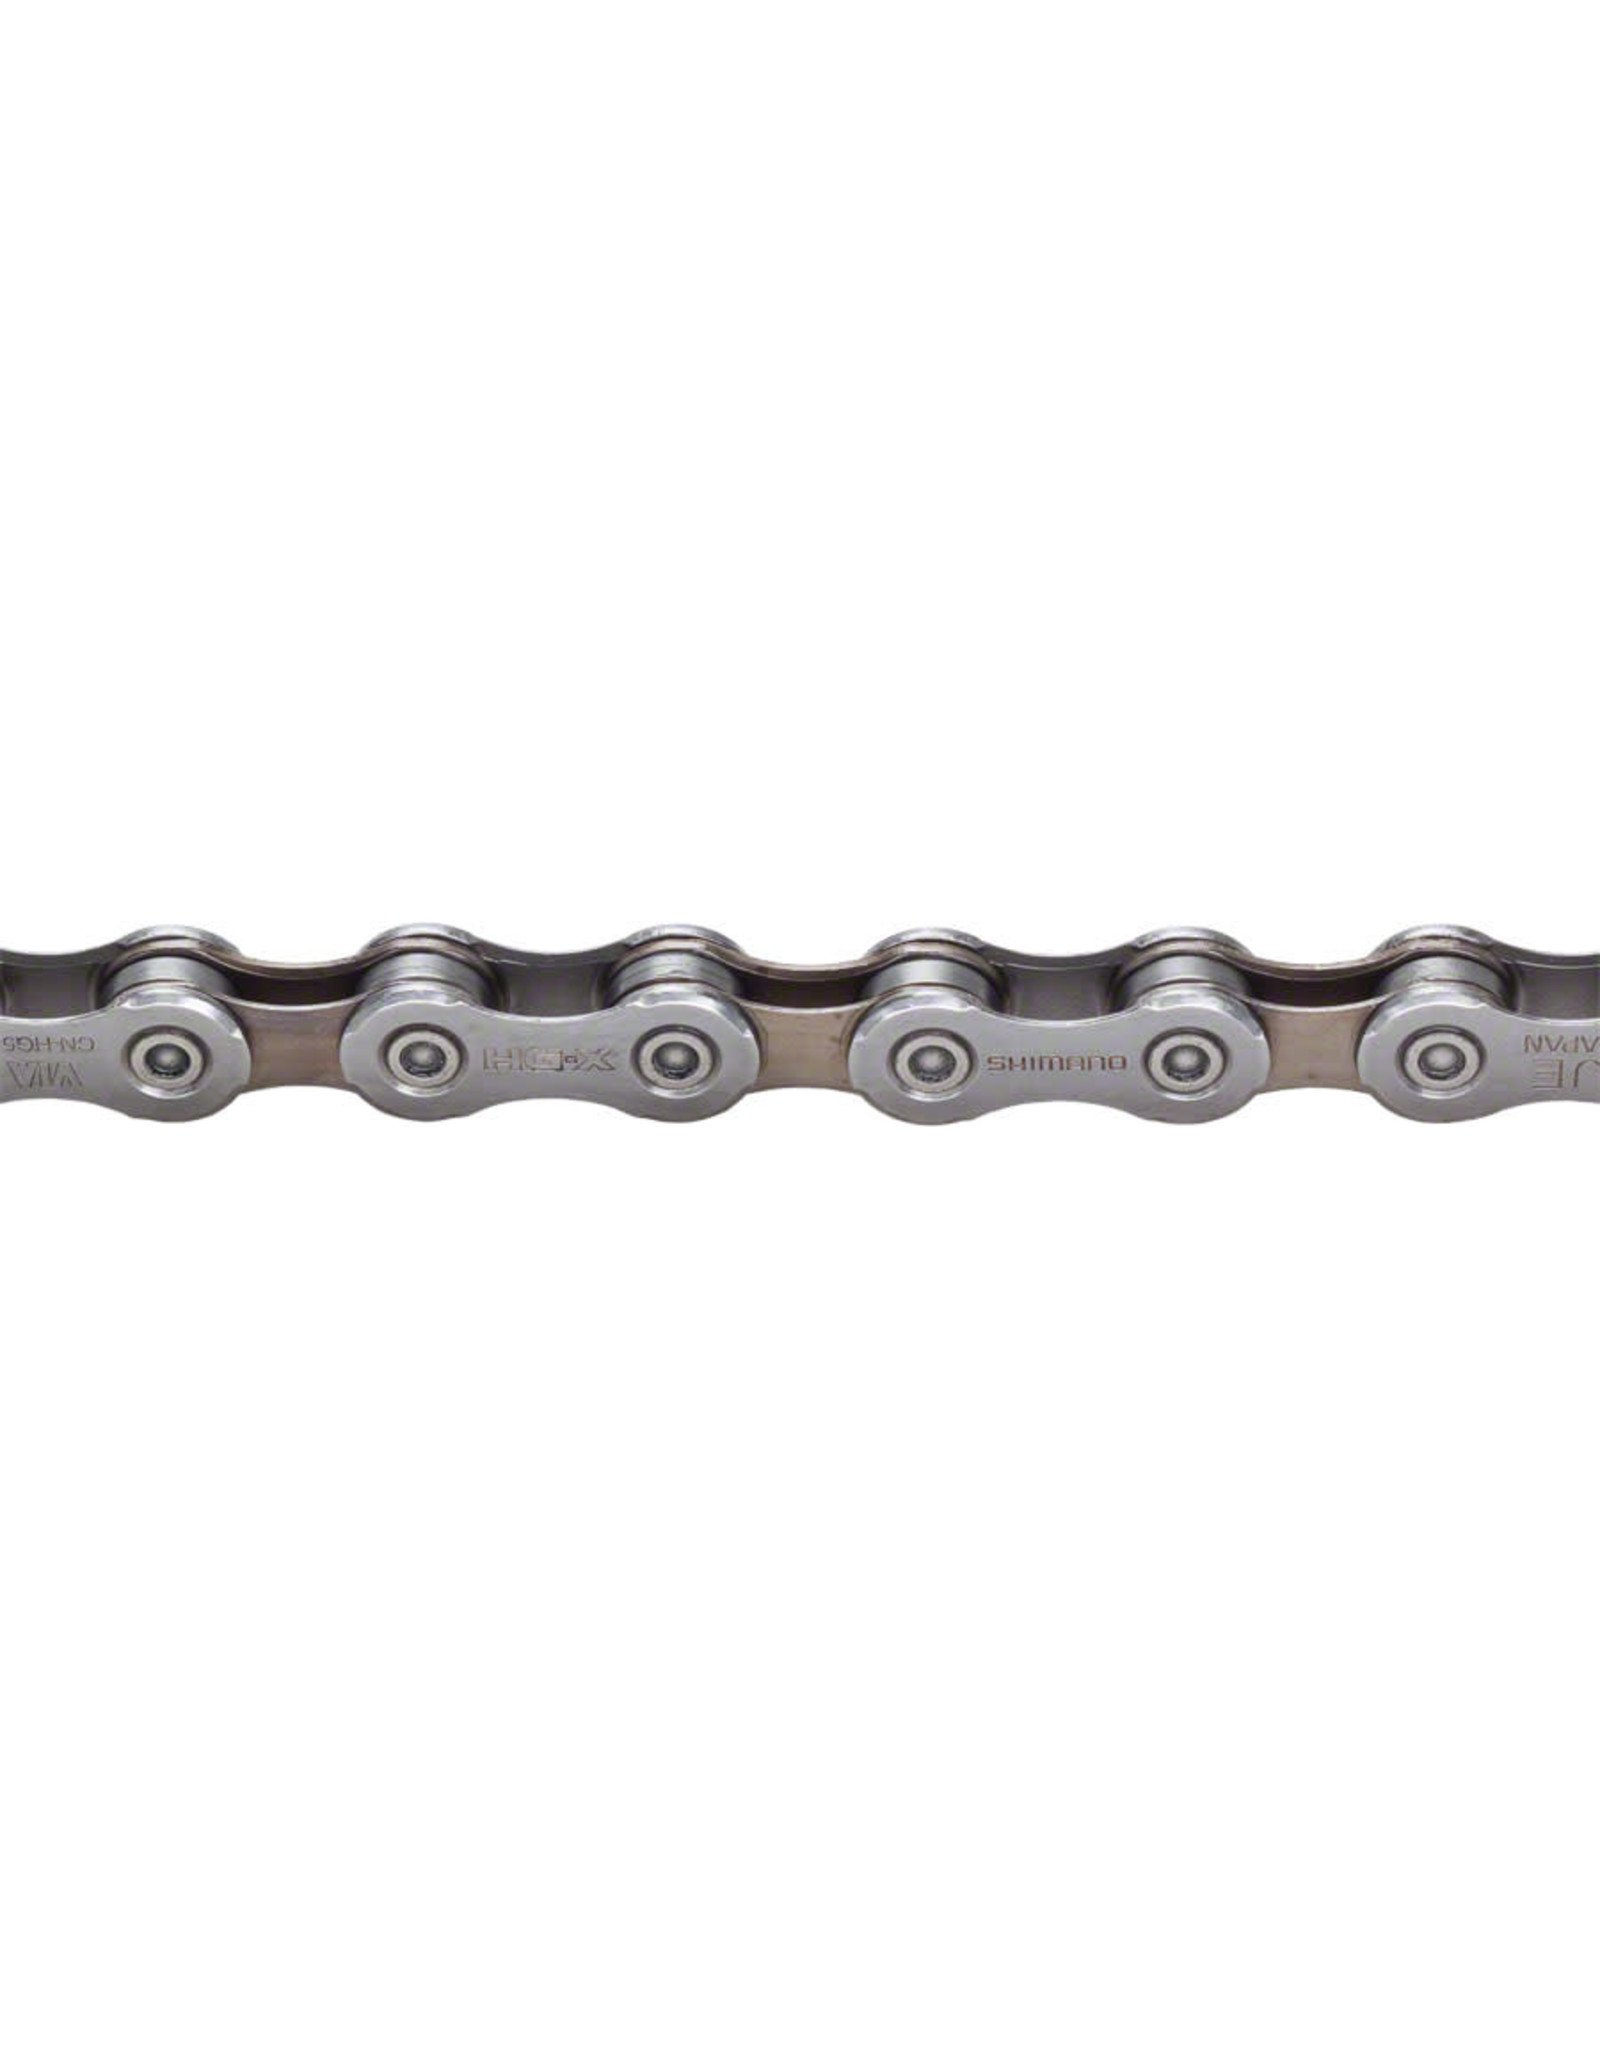 shimano hg54 chain